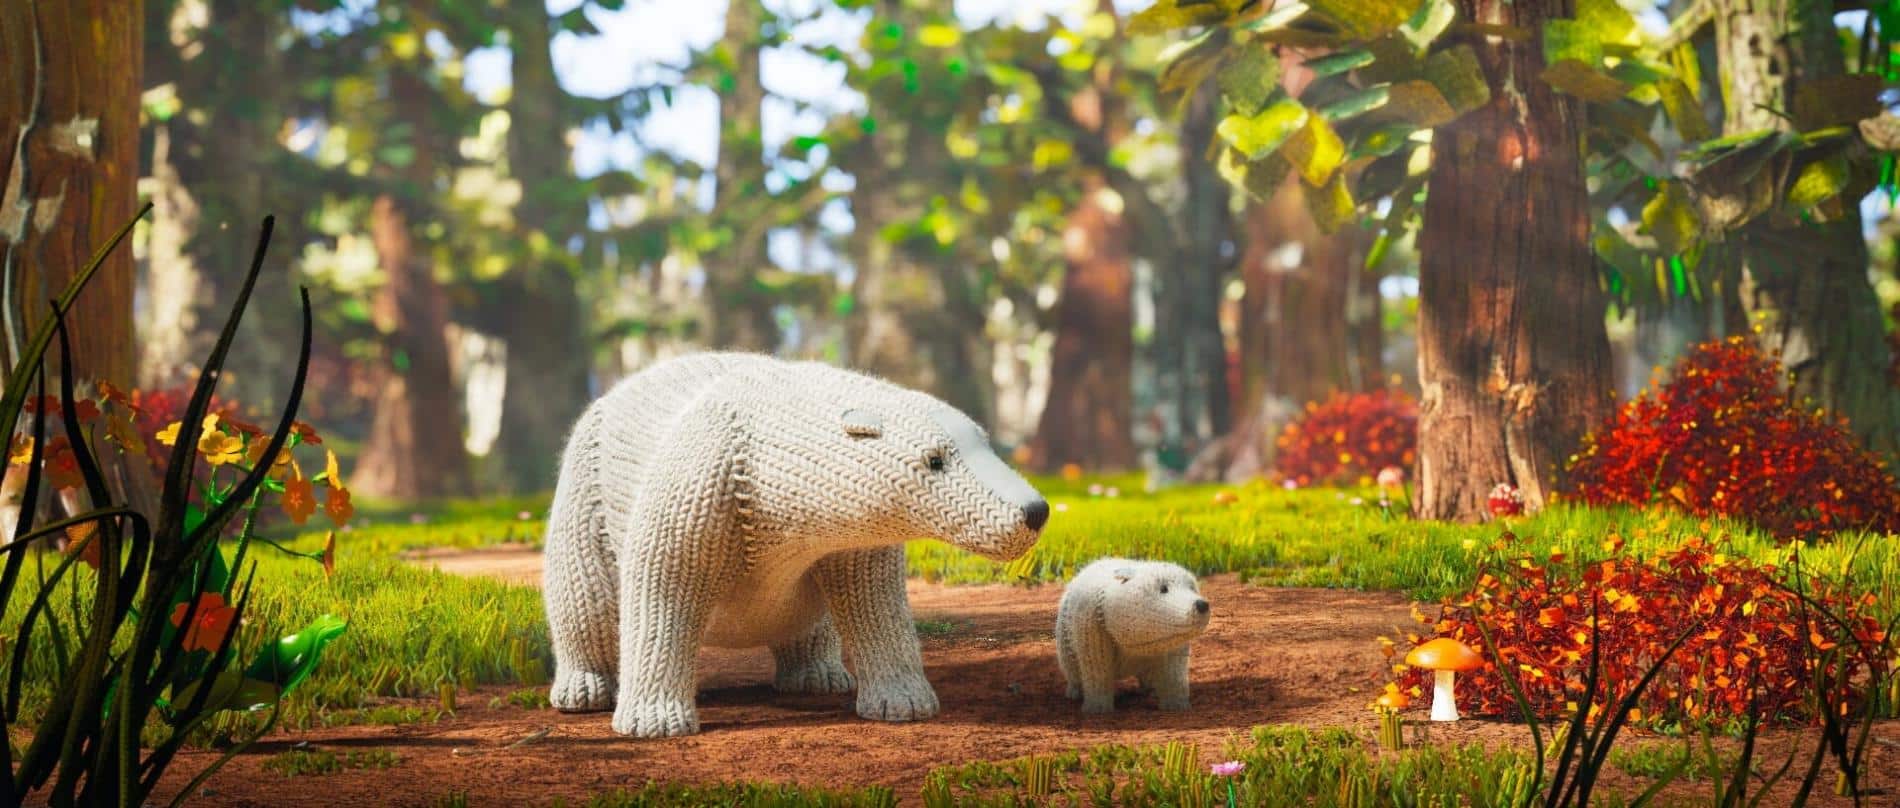 mama y cria de osos polar luchan por su vida en un camino hacia un nuevo hogar